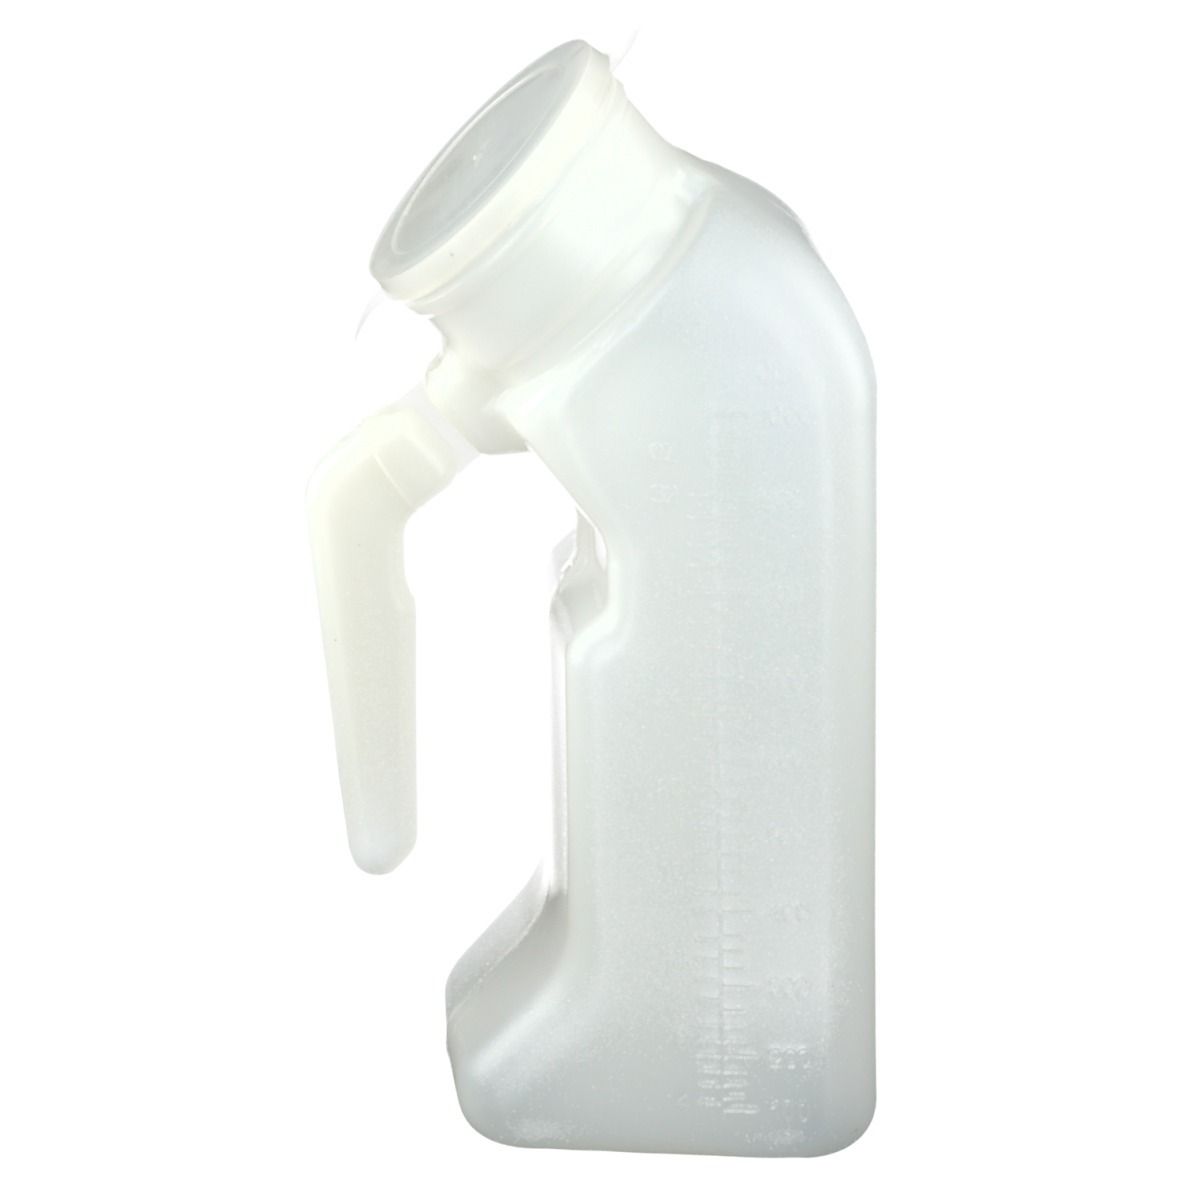 Urinflasche mit Griff und Deckel für Männer 1 Liter